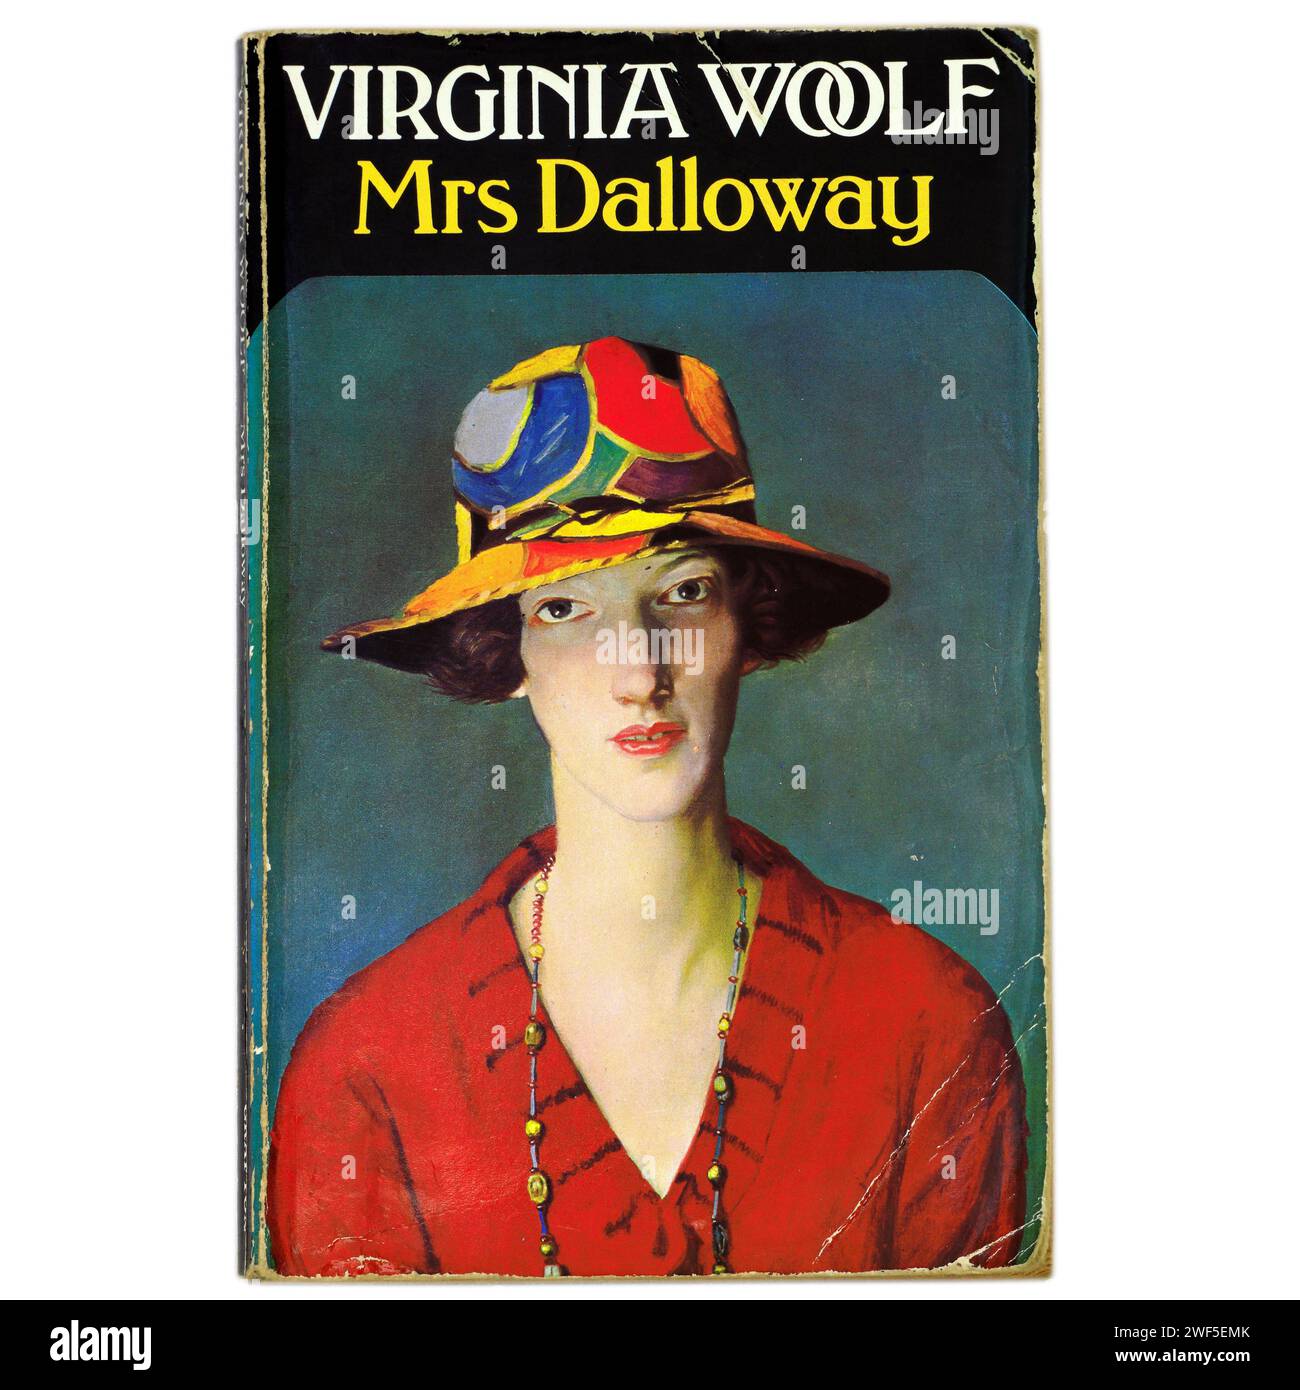 Mme Dalloway de Virginia Woolf. Couverture de livre sur fond clair / blanc Banque D'Images